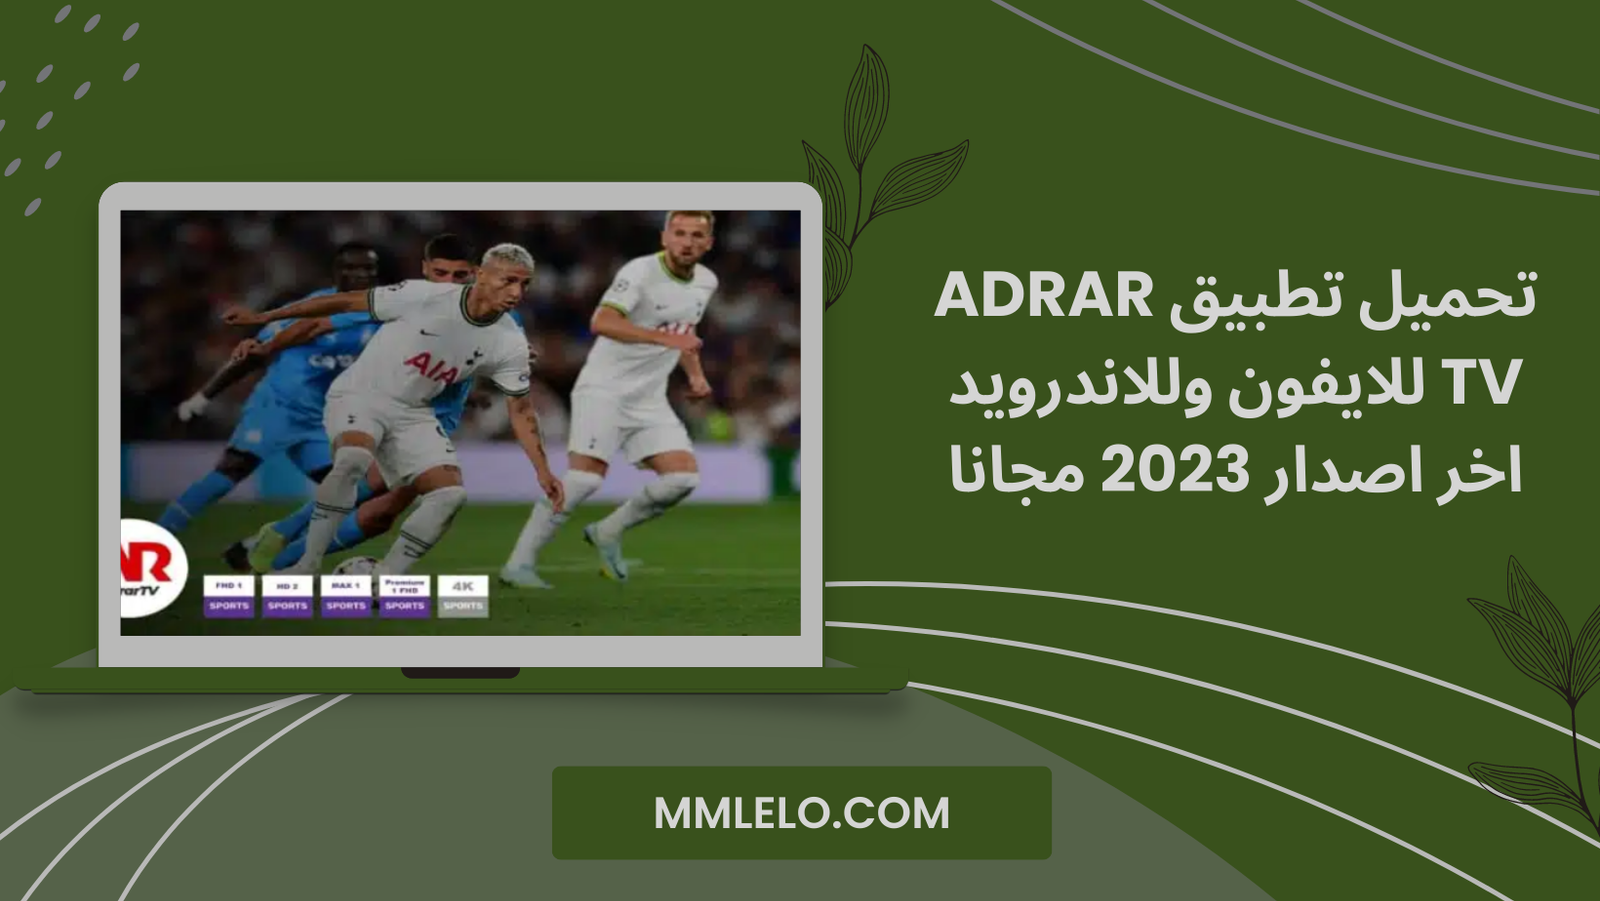 تحميل تطبيق adrar tv للايفون وللاندرويد اخر اصدار 2023 مجانا